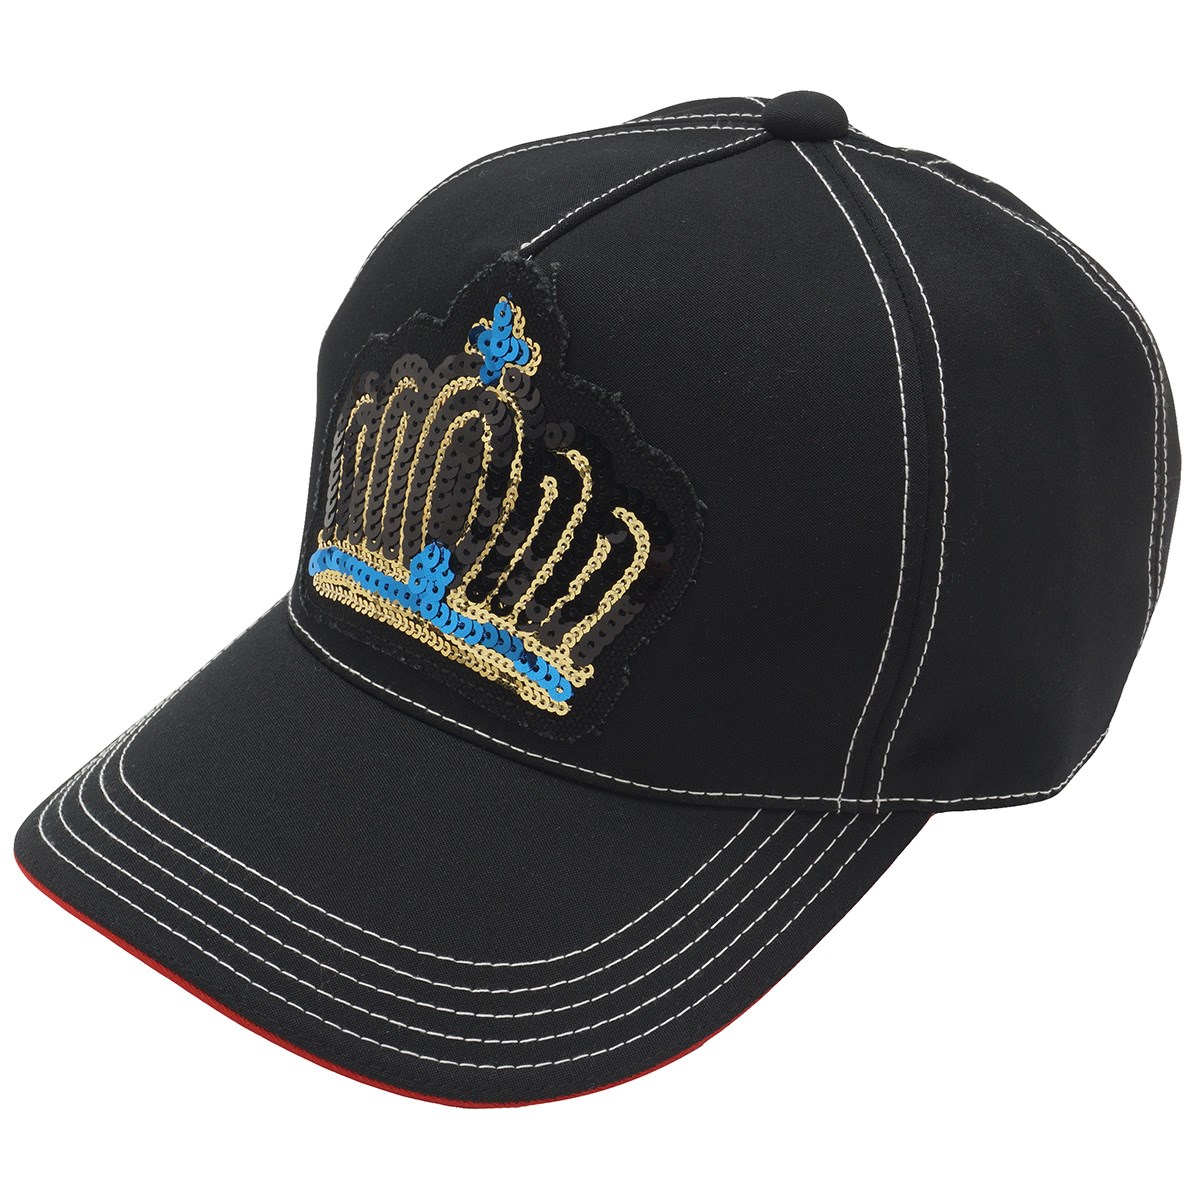 「ブラッドシフト スパンコール王冠刺繍キャップ 」（帽子）- ゴルフ(GOLF)用品のネット通販